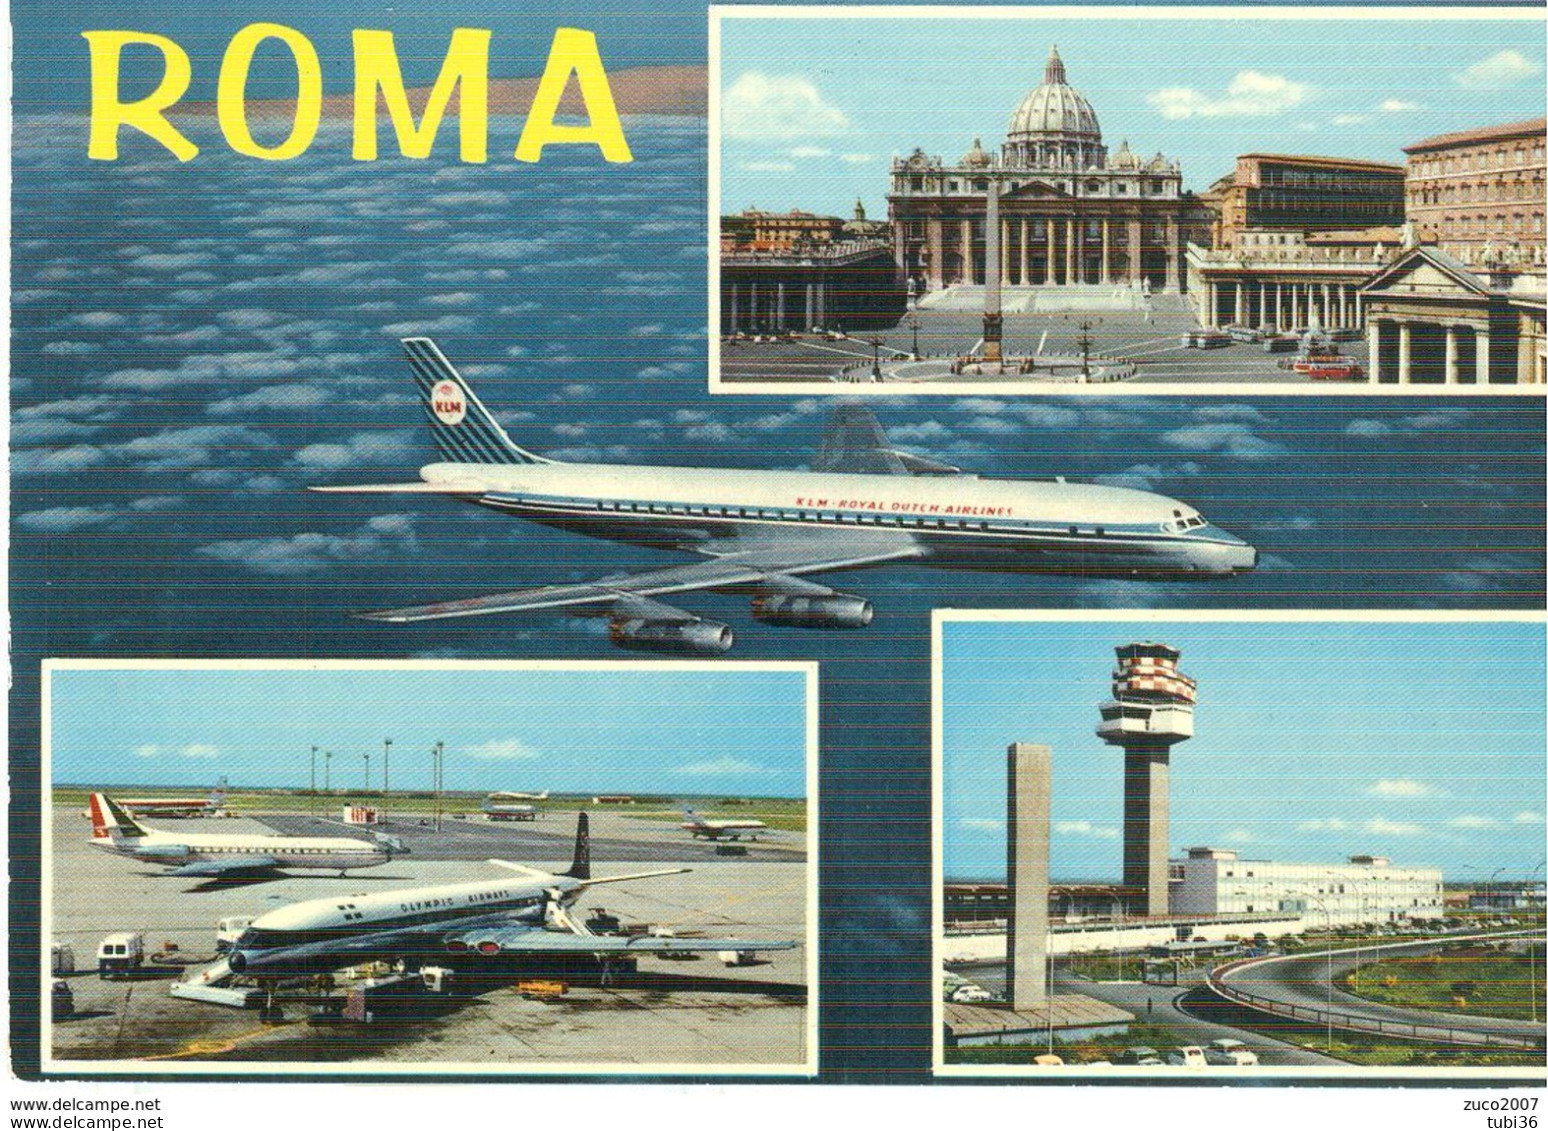 ROMA - 4 VEDUTINE - AEROPORTO,AEREI -S.PIETRO-COLORI,VIAGGIATA 1969 - POSTE ROMA - Transportmiddelen